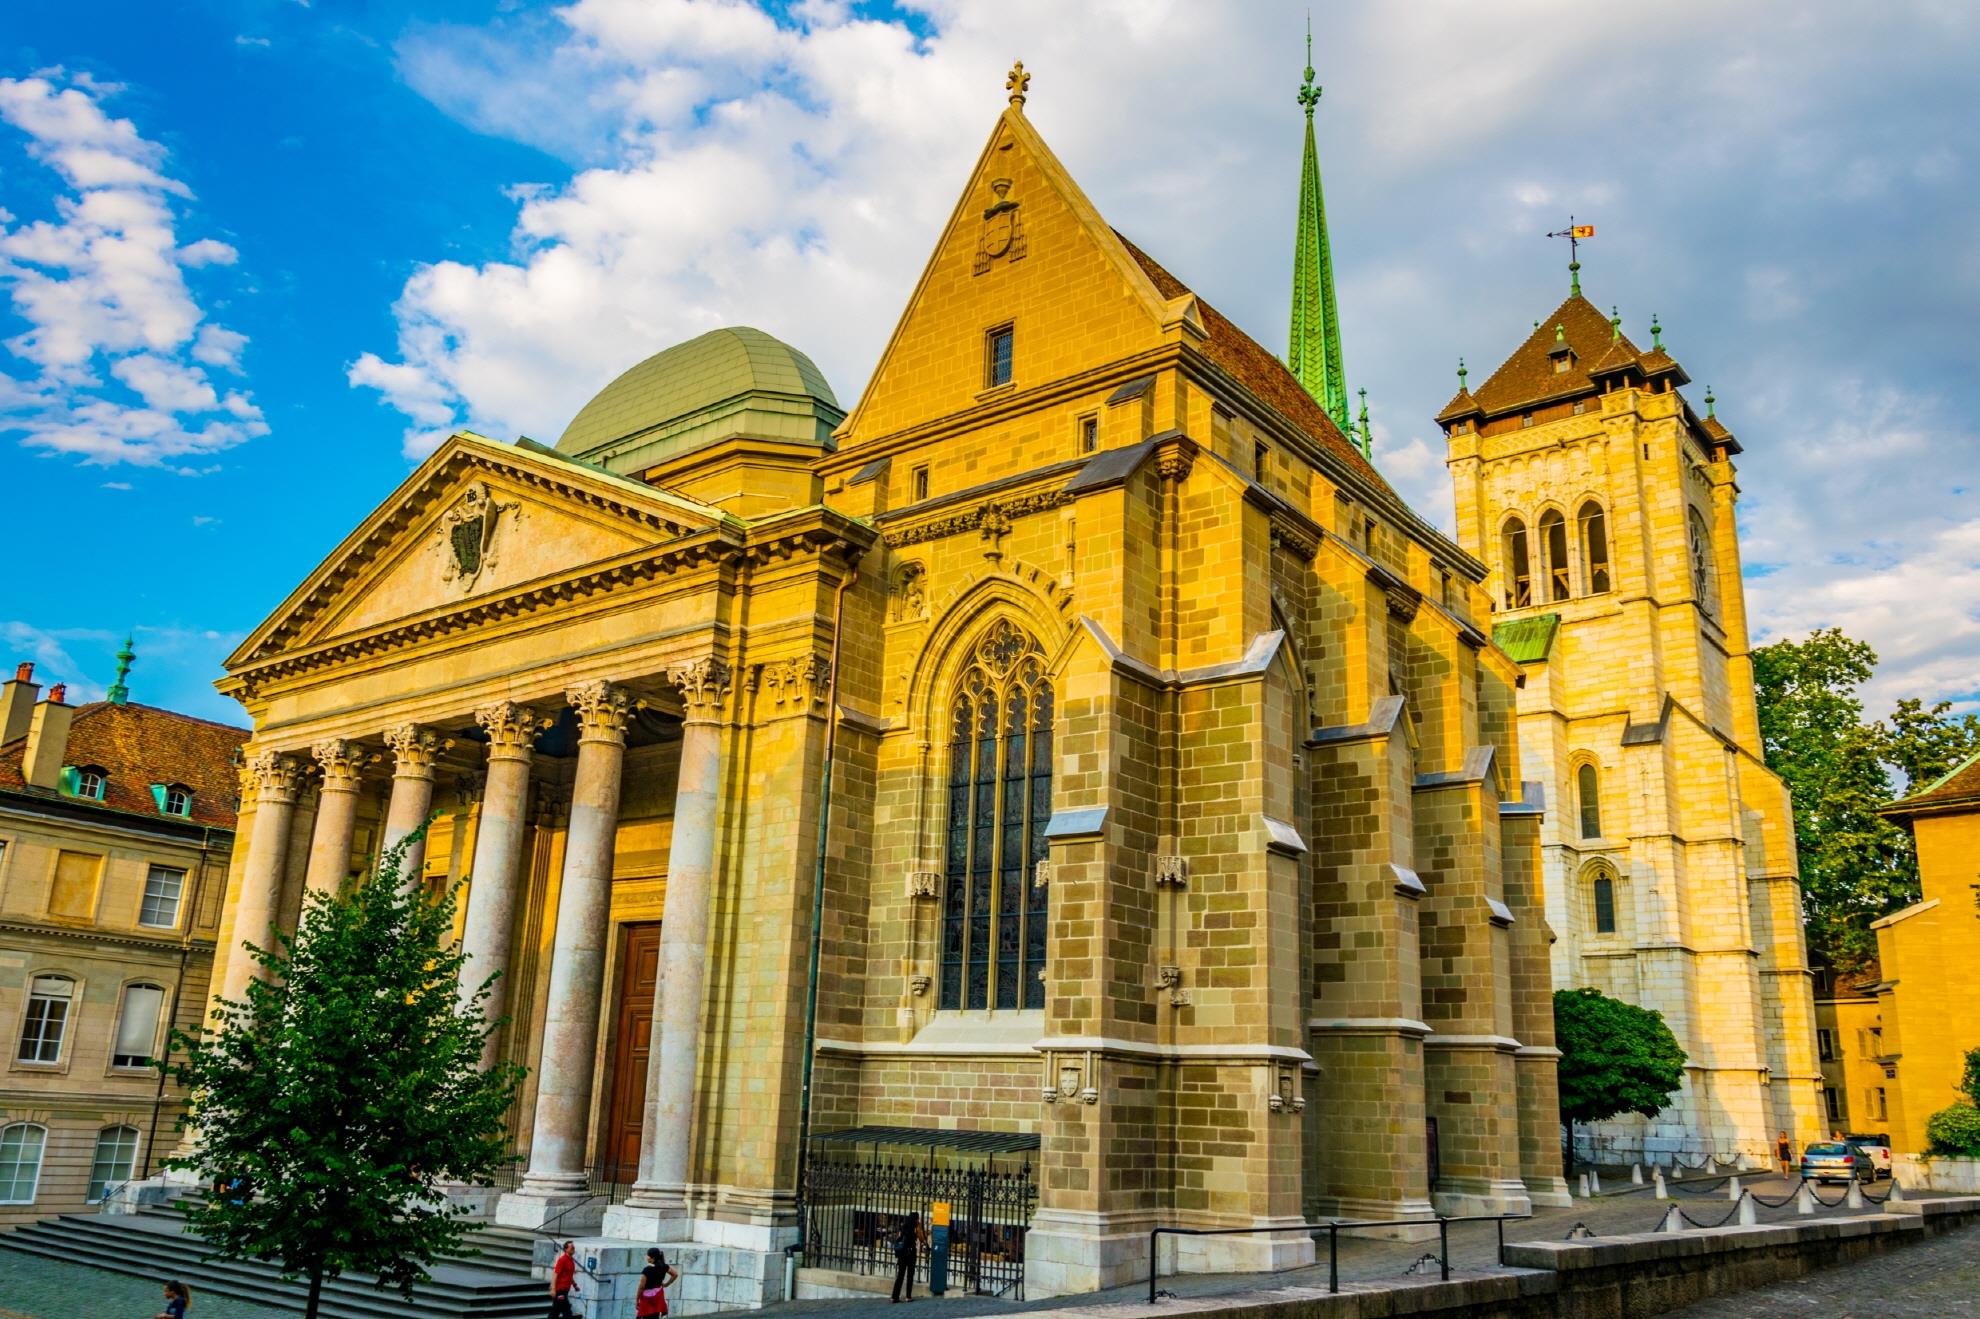 제네바 구시가를 대표하는 성 피에르 대성당은 여러 차례의 재건축을 통해 다양한 건축 양식을 갖춘 건물입니다